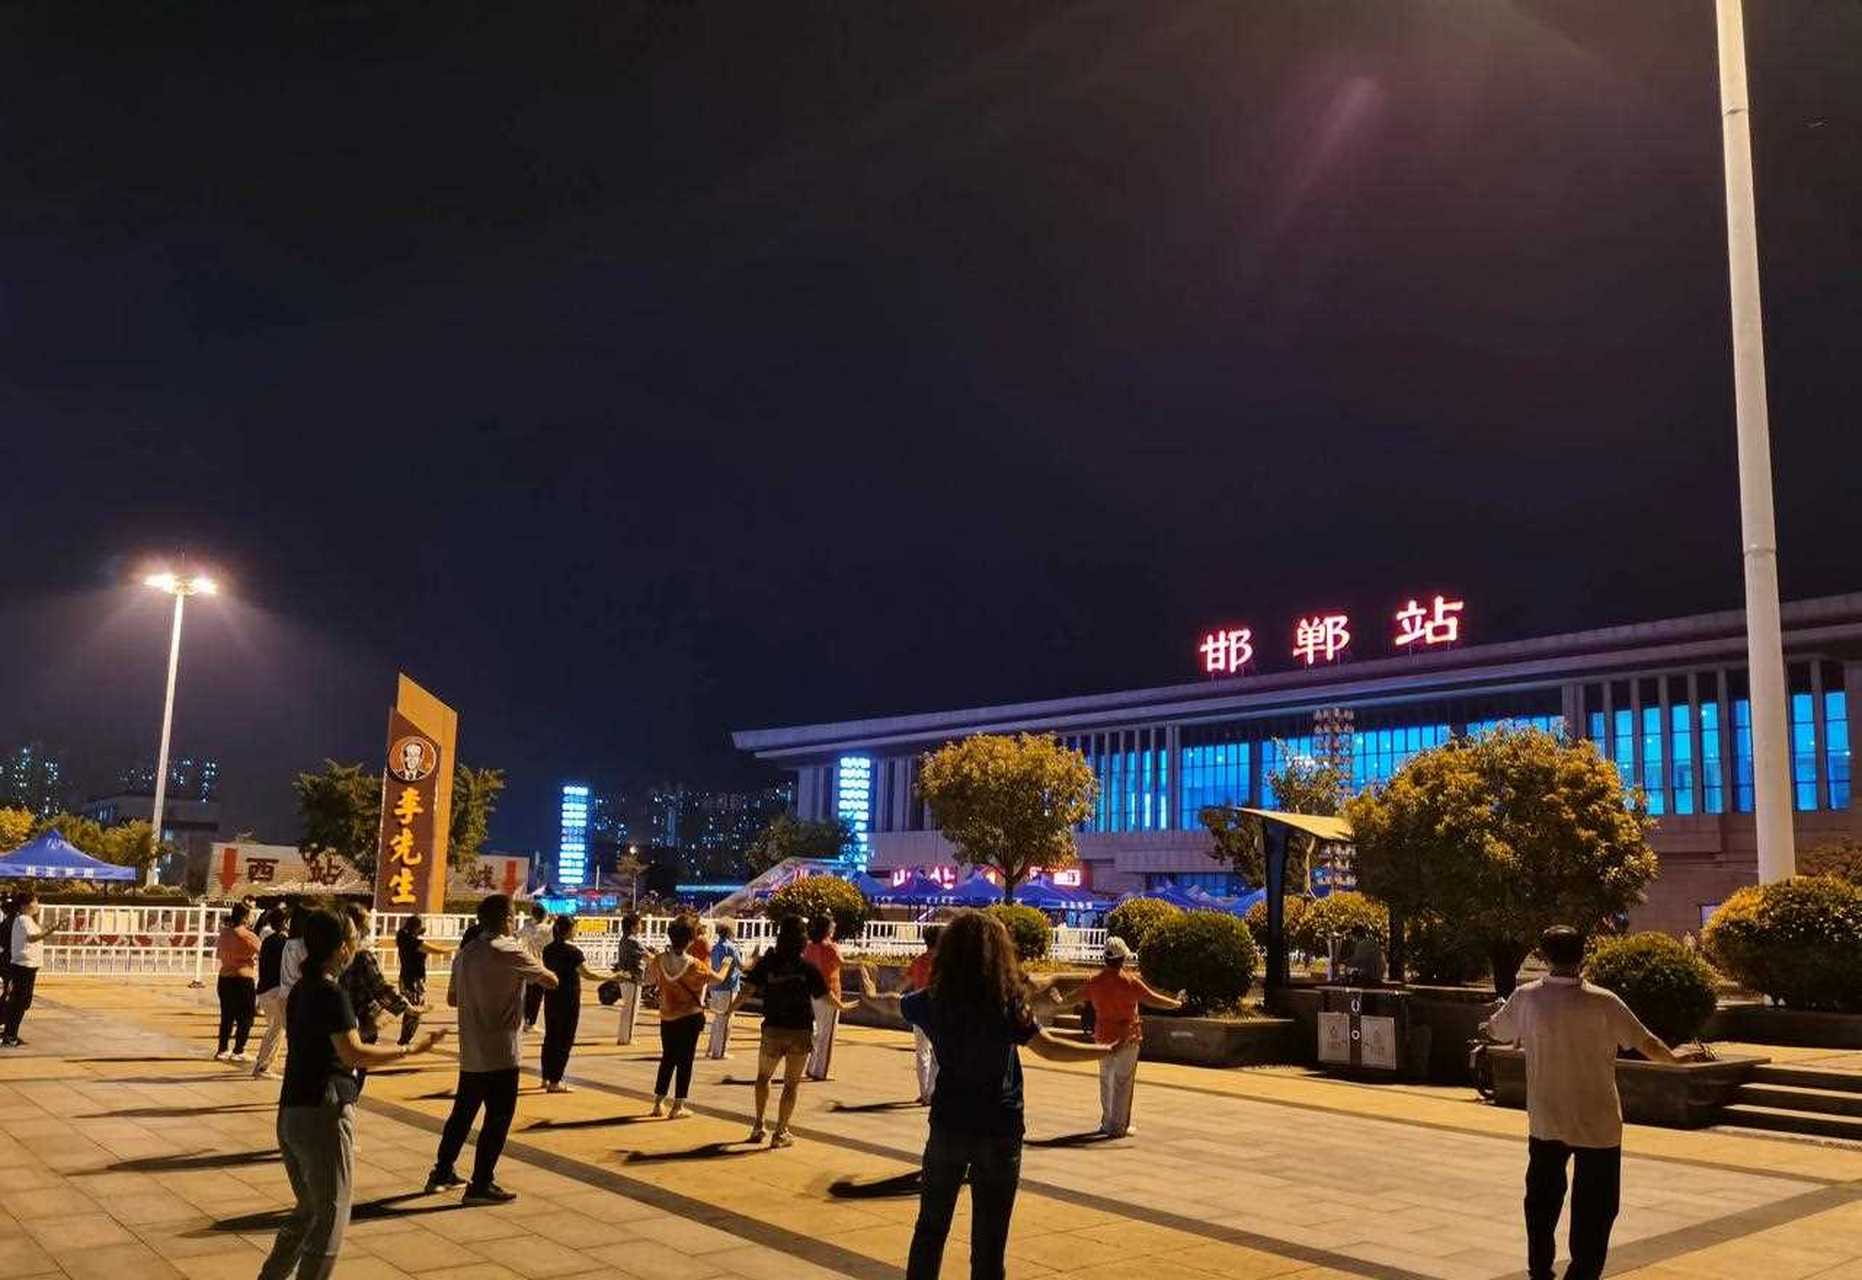 邯郸火车站夜景图片